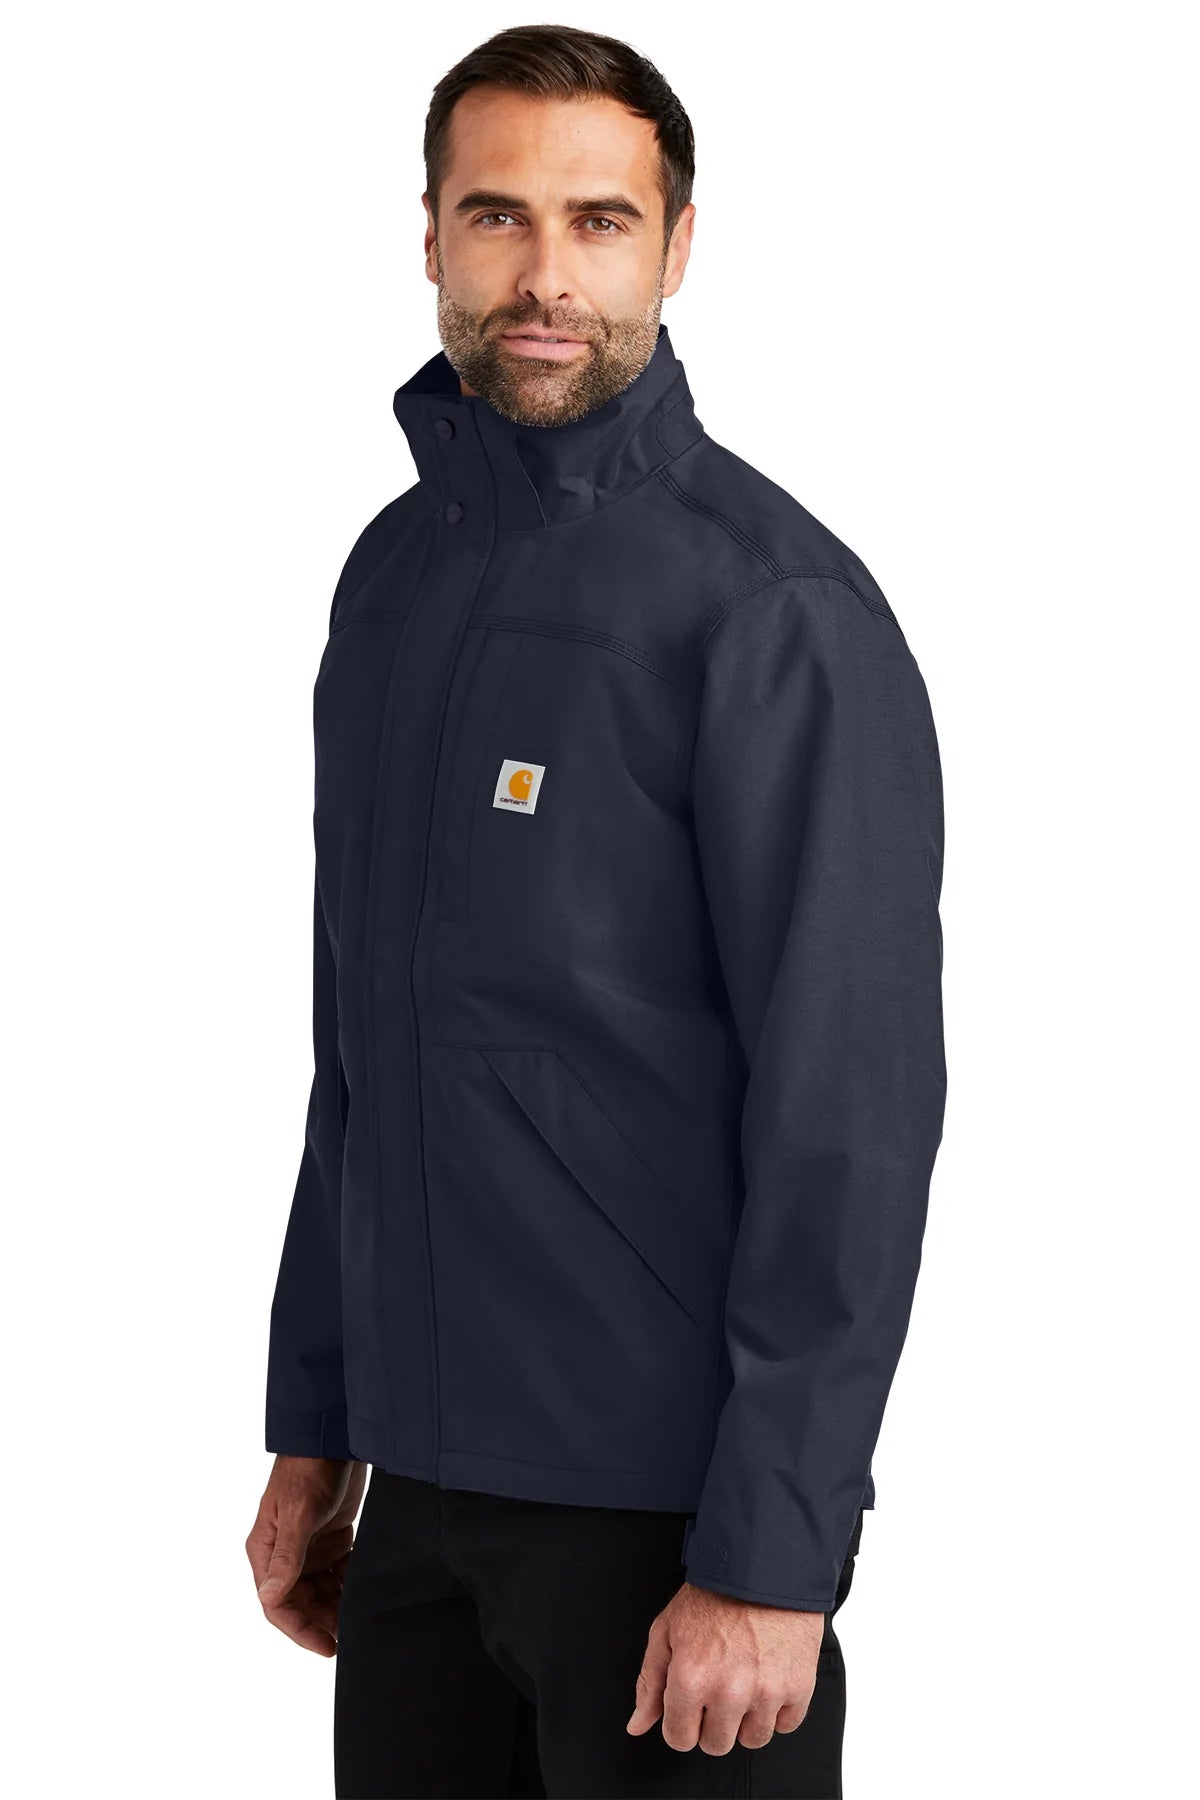 Carhartt Shoreline Branded Jackets, Navy